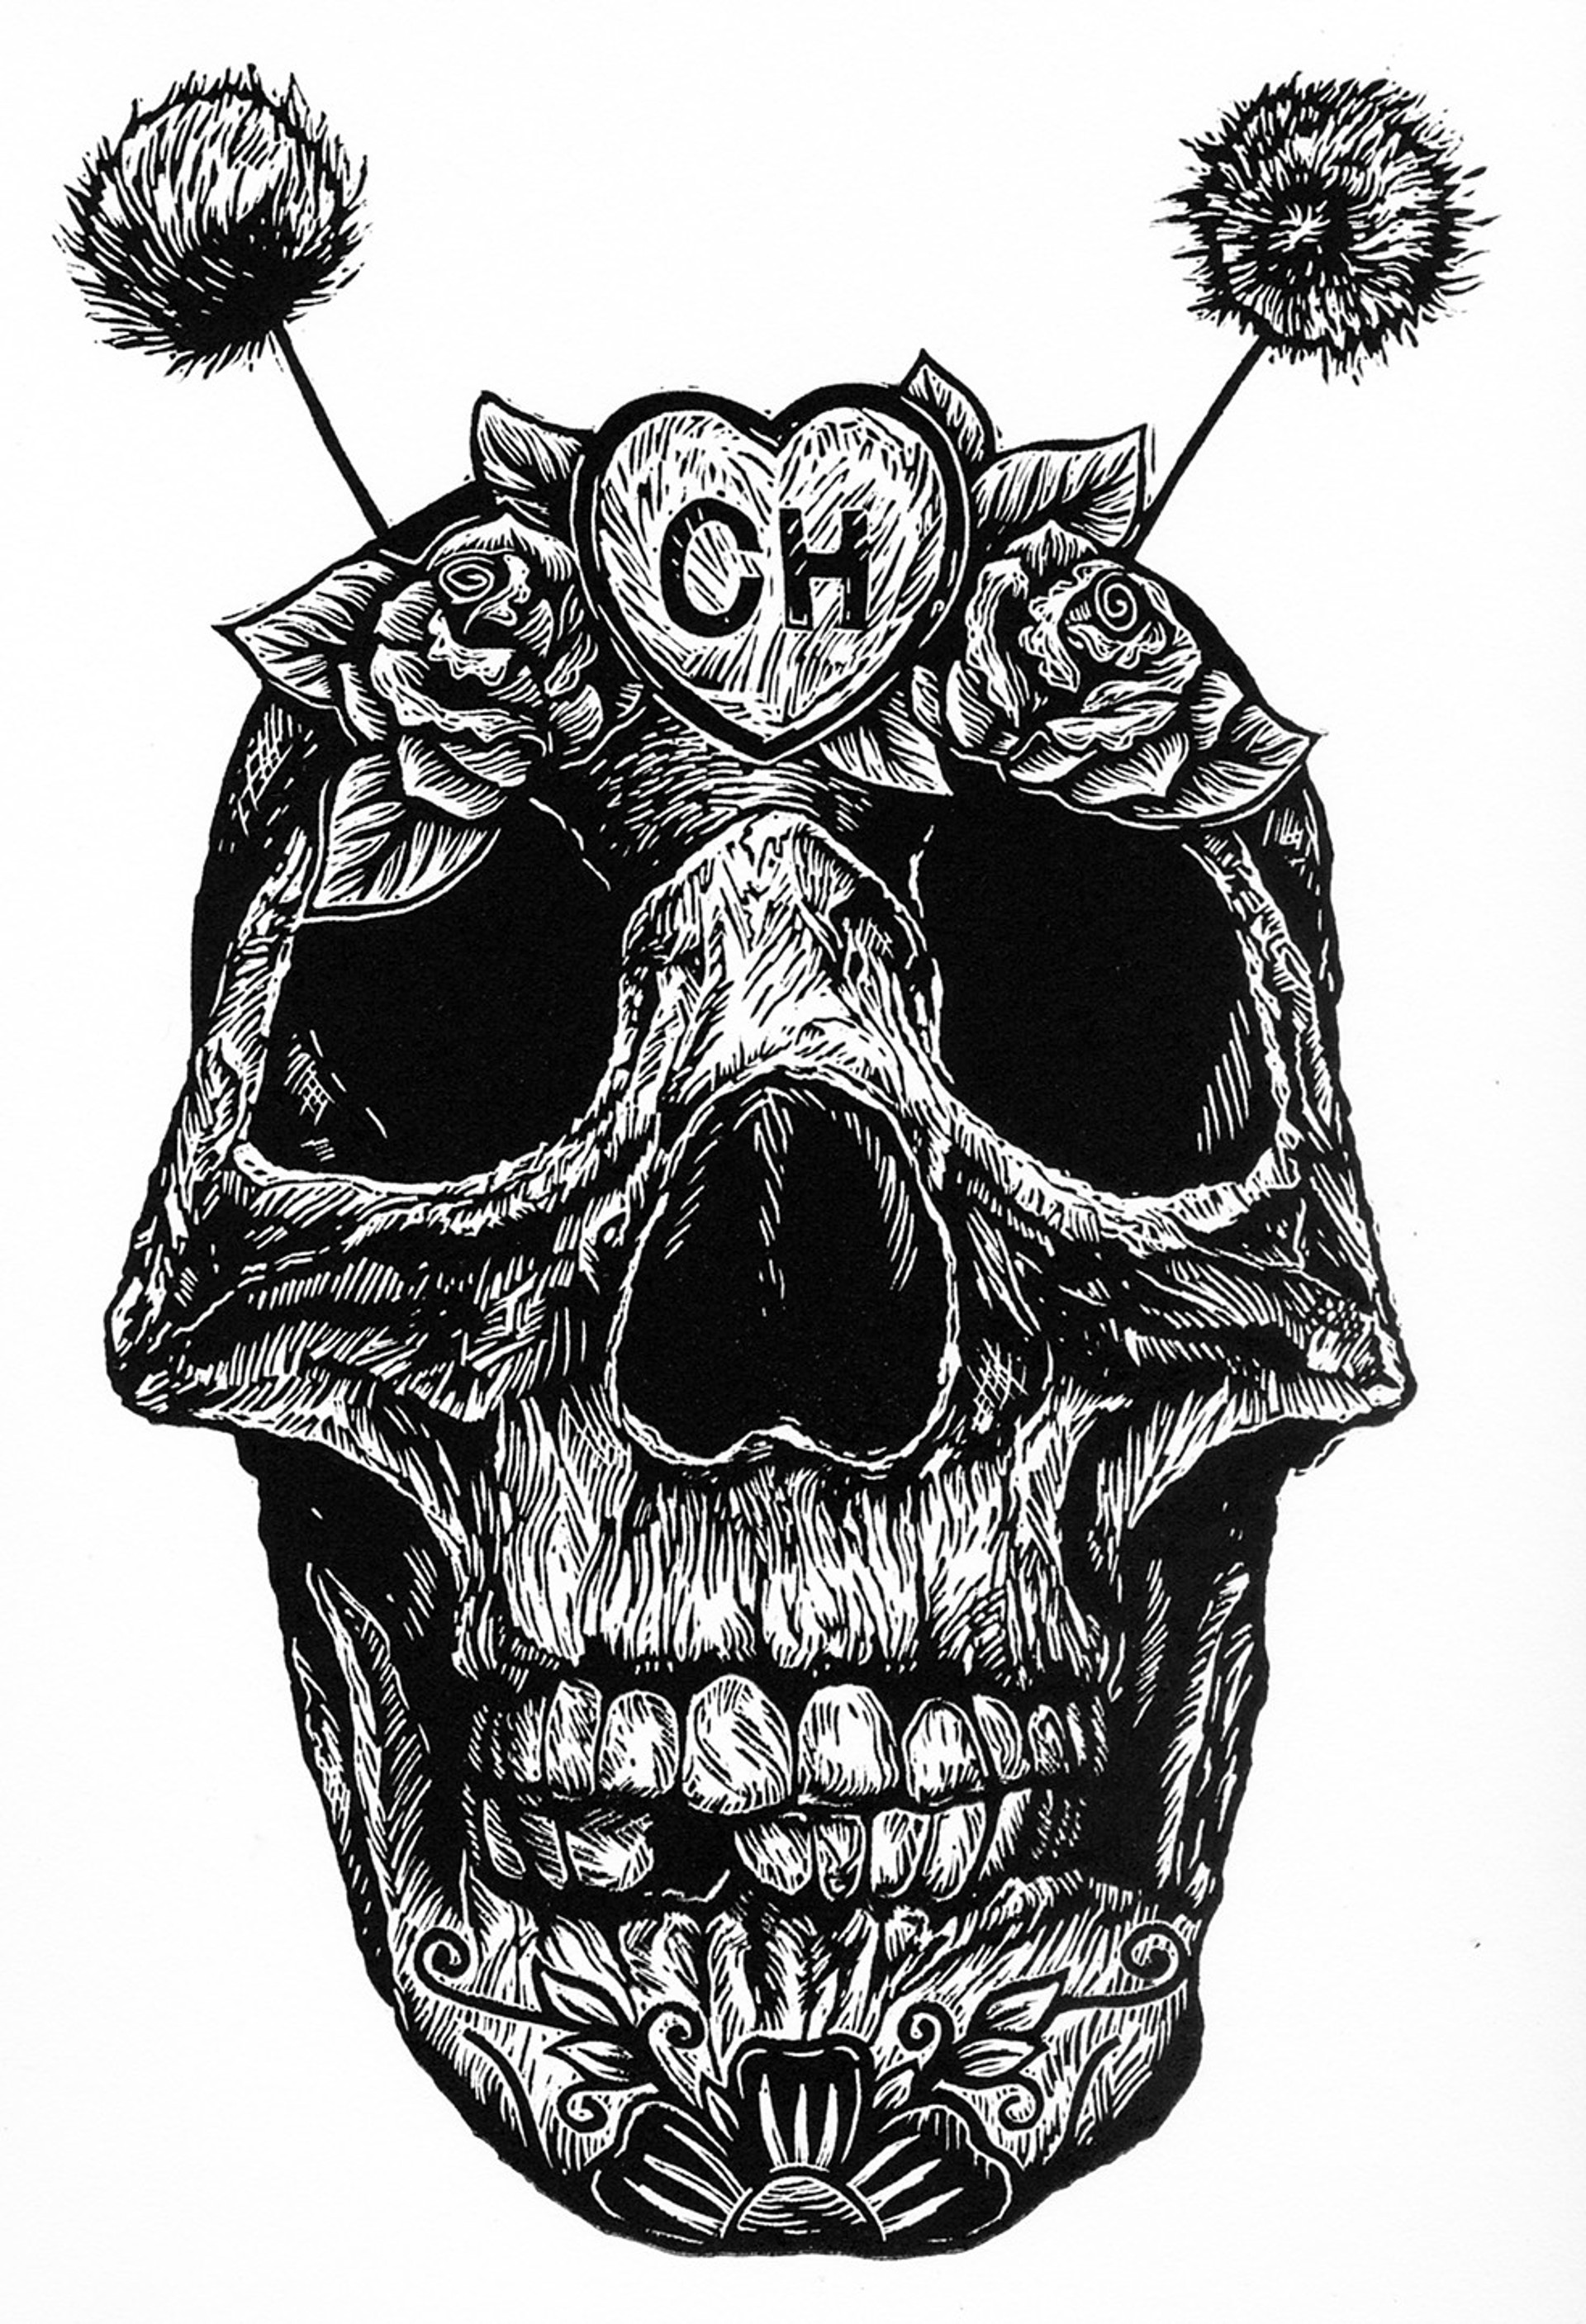 Cala Chapu (Grasshopper Skull) by Juan de Dios Mora